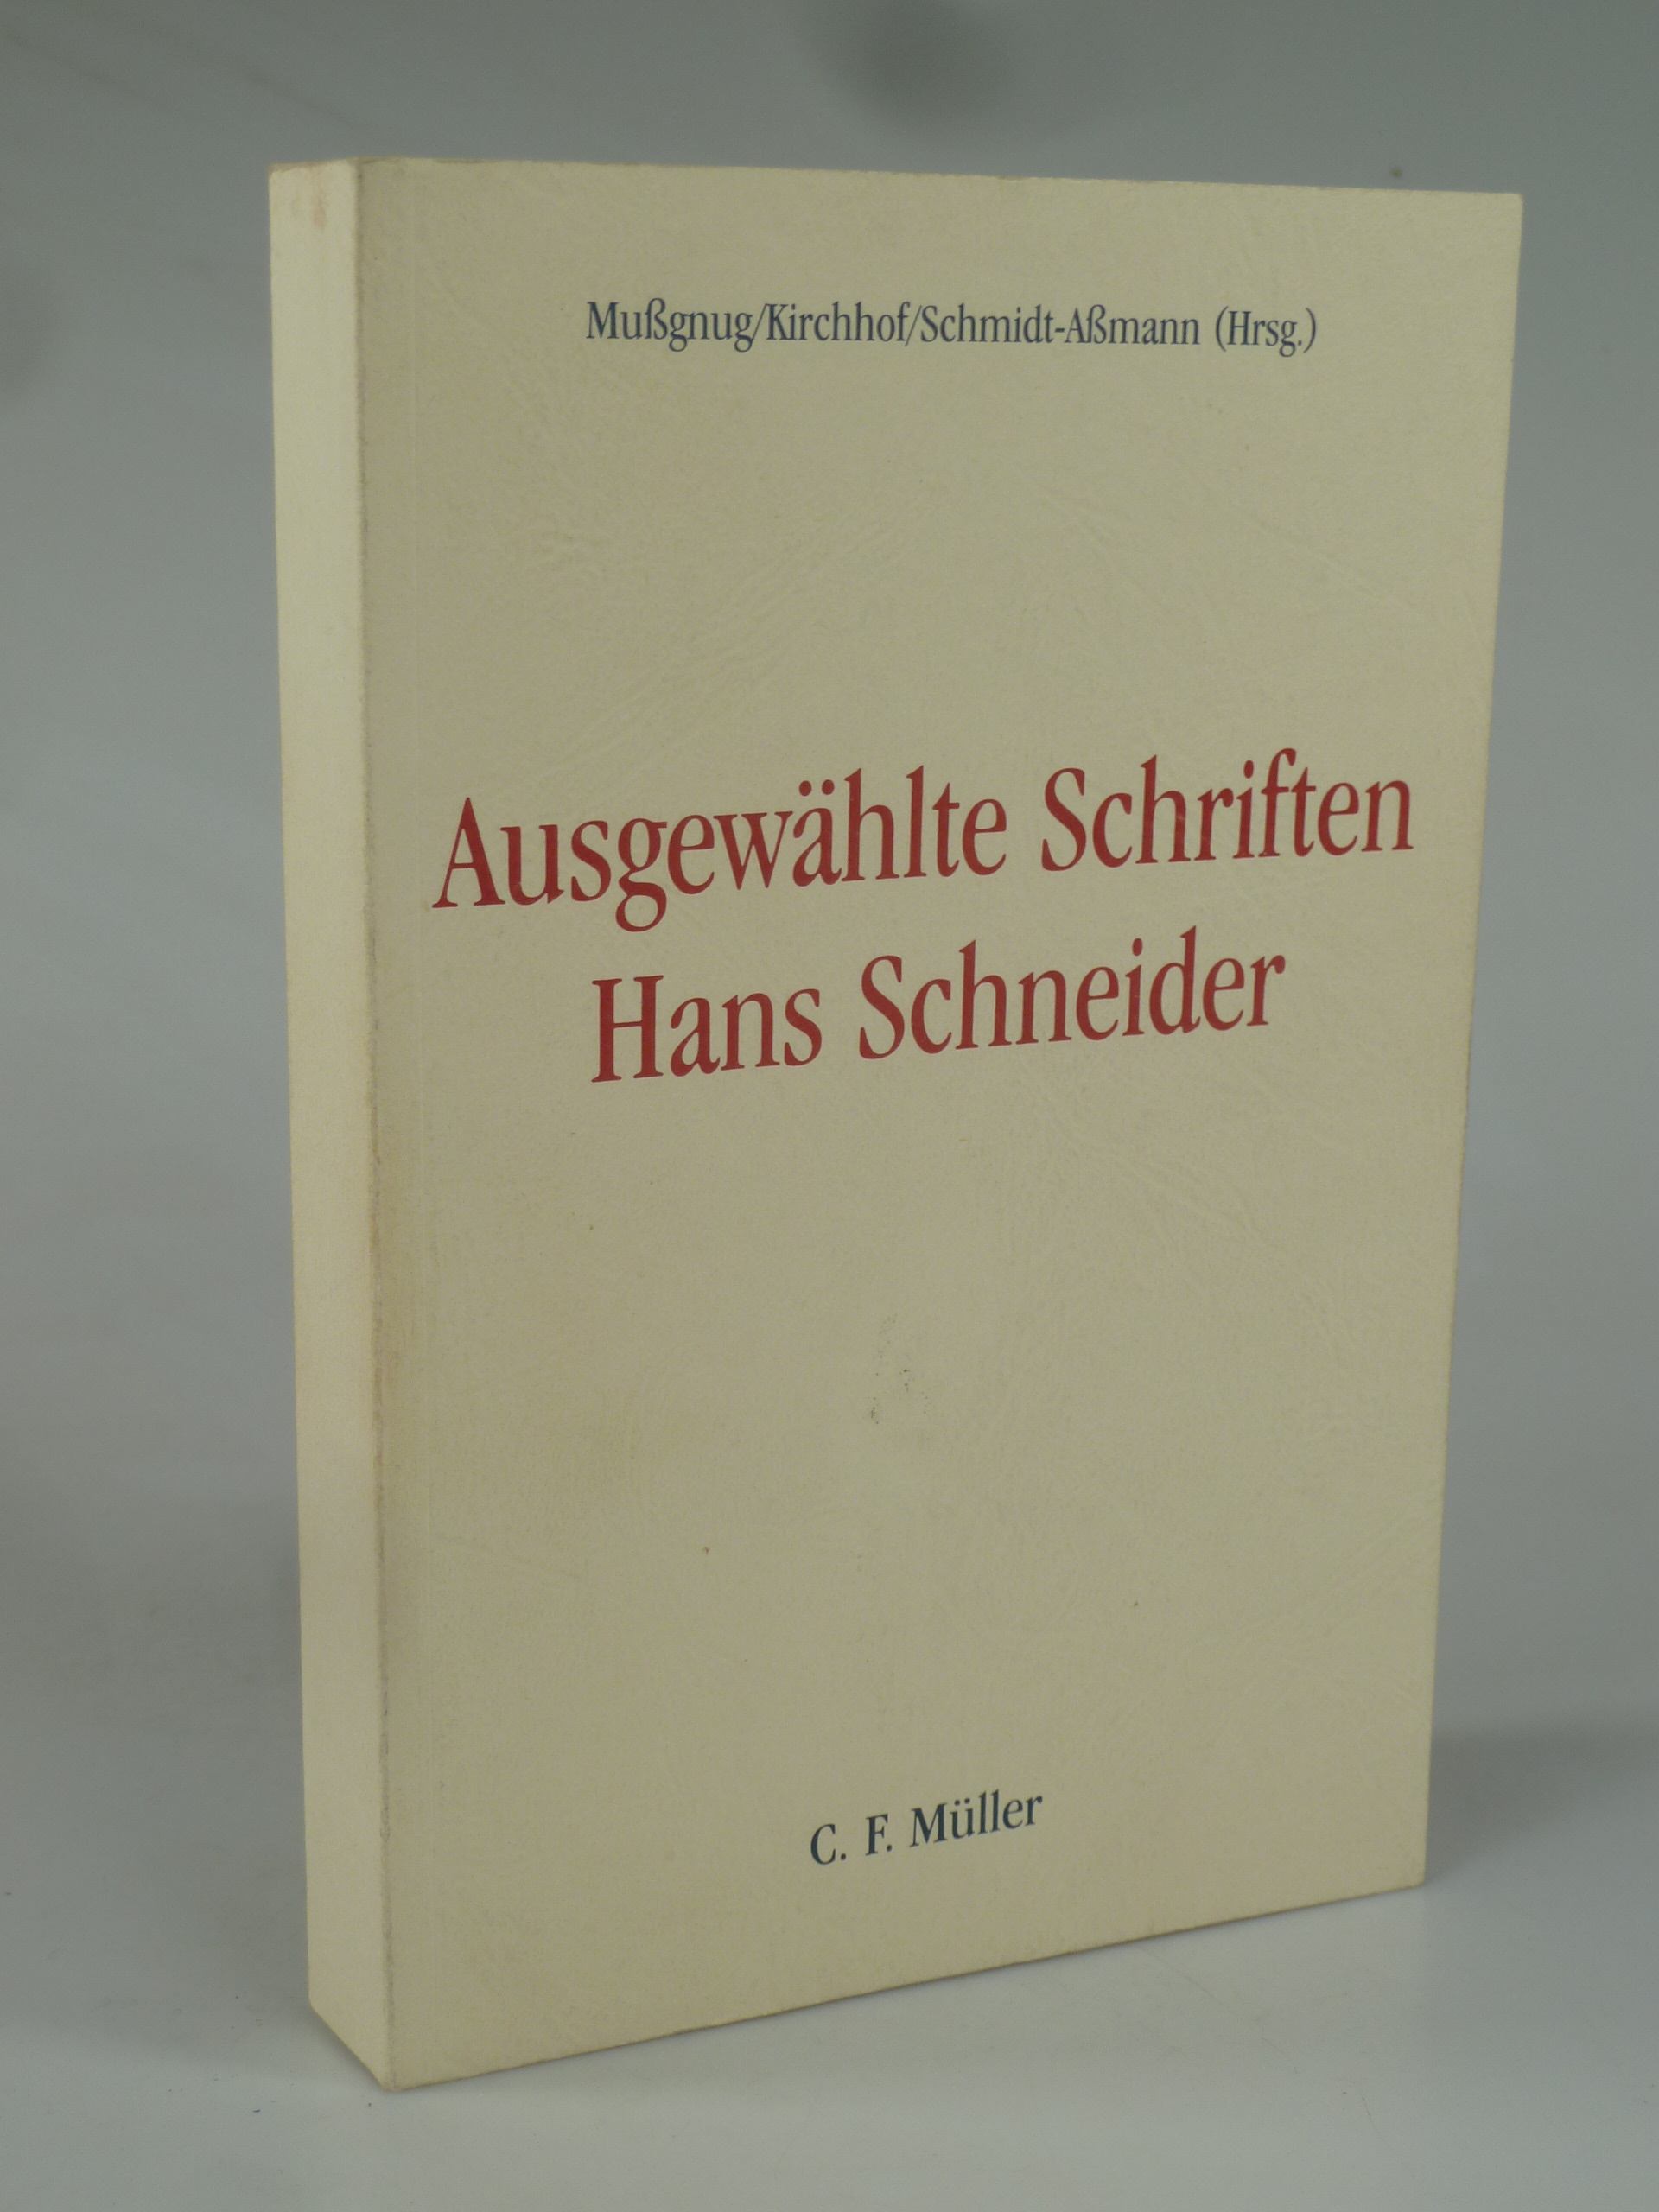 Ausgewählte Schriften Hans Schneider. - MUßGNUG / KIRCHHOF / SCHMIDT-AßMANN (HRSG.).